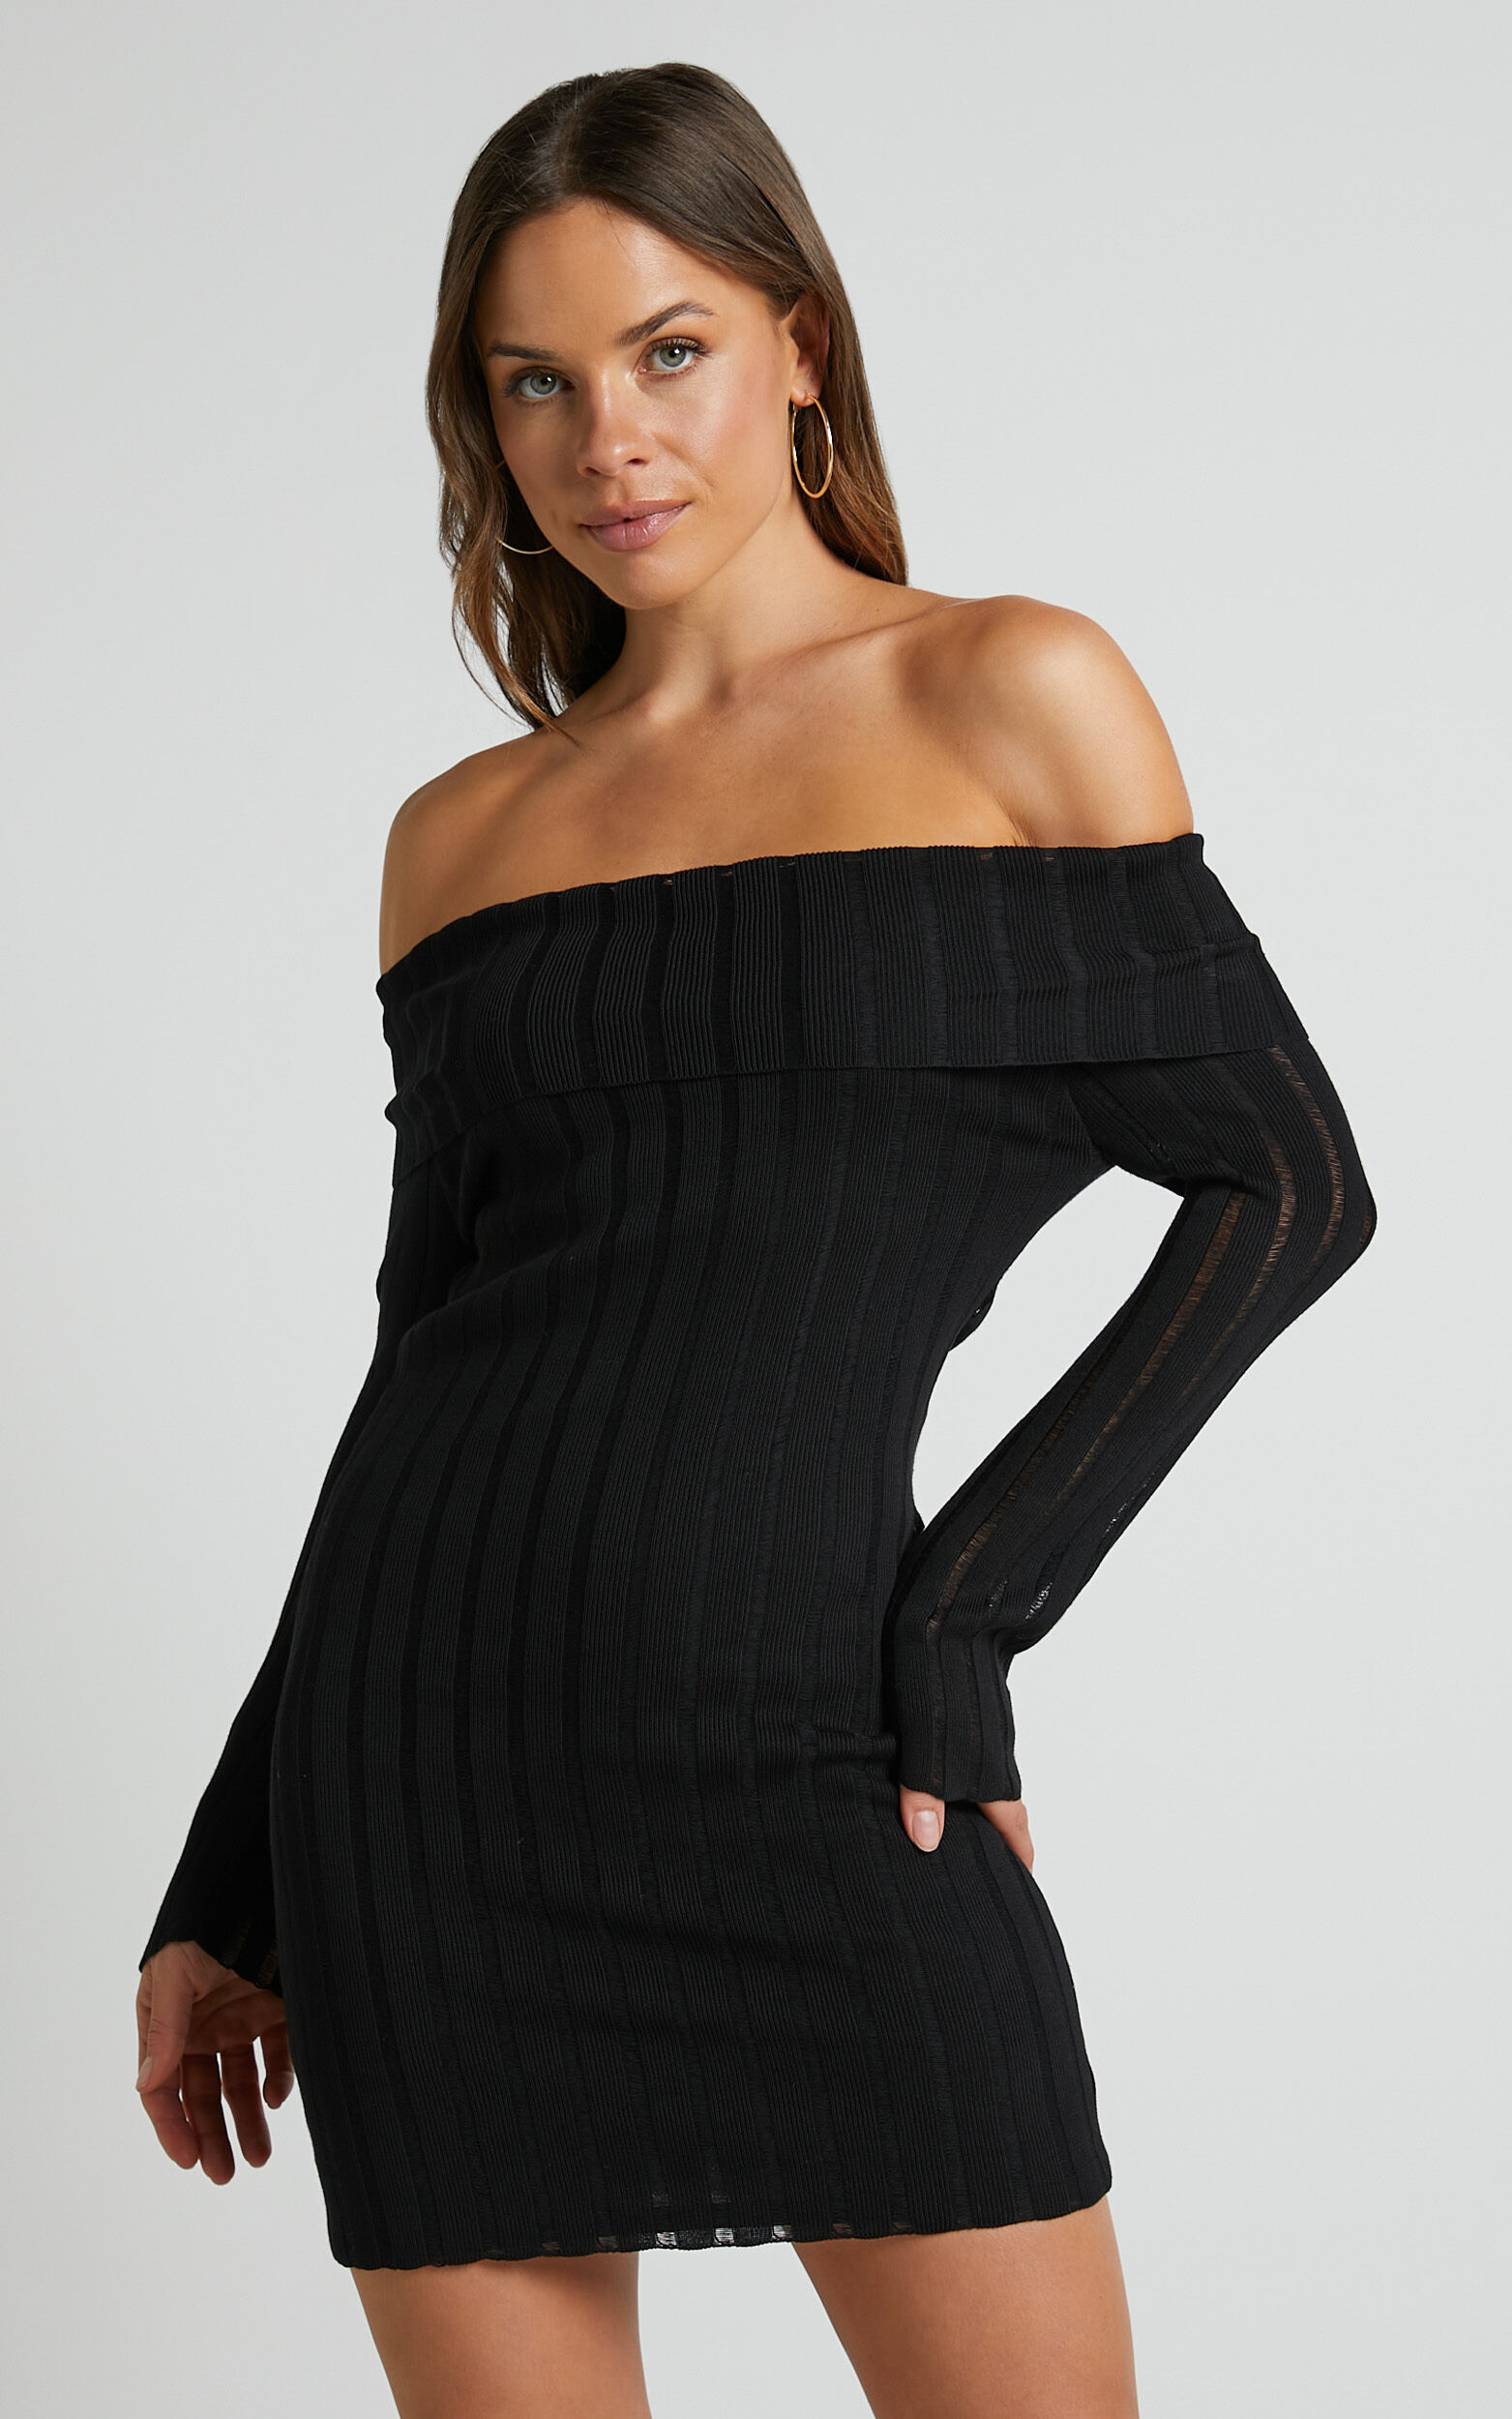 Kailah Off the Shoulder Knit Mini Dress in Black - 06, BLK1